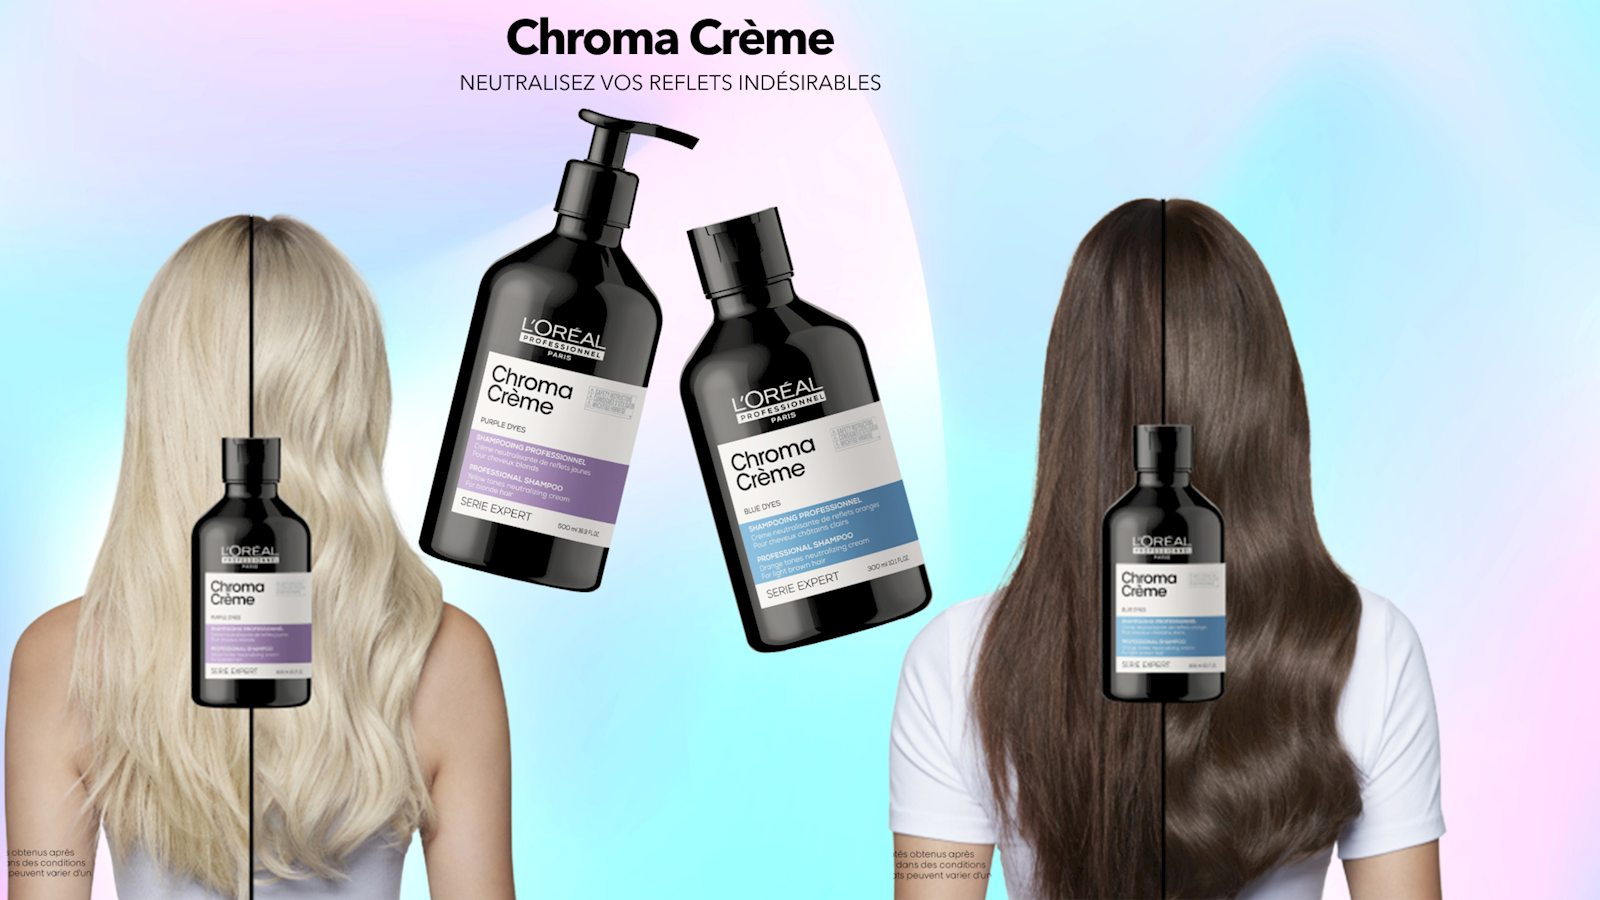 24 shampoings de la nouvelle gamme Chroma Crème 